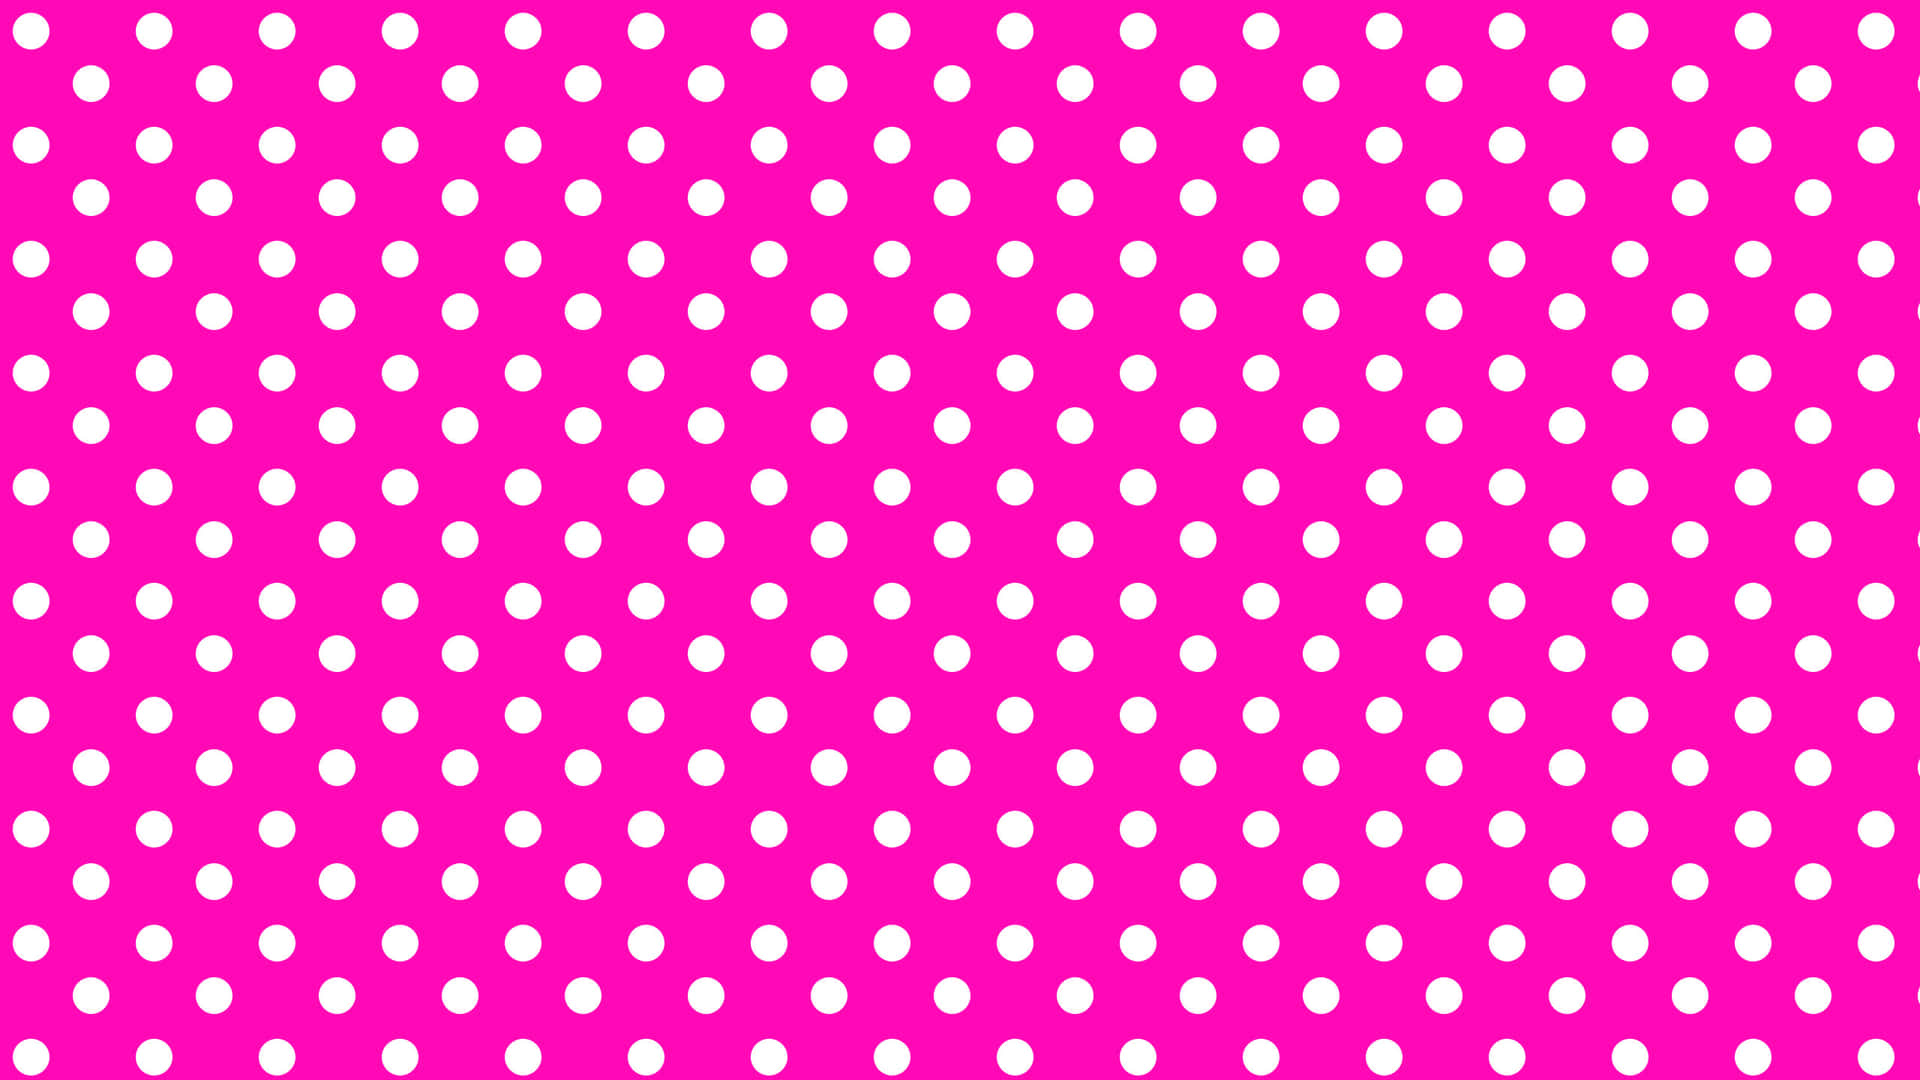 9. Hot Pink and Polka Dot Nail Design - wide 1